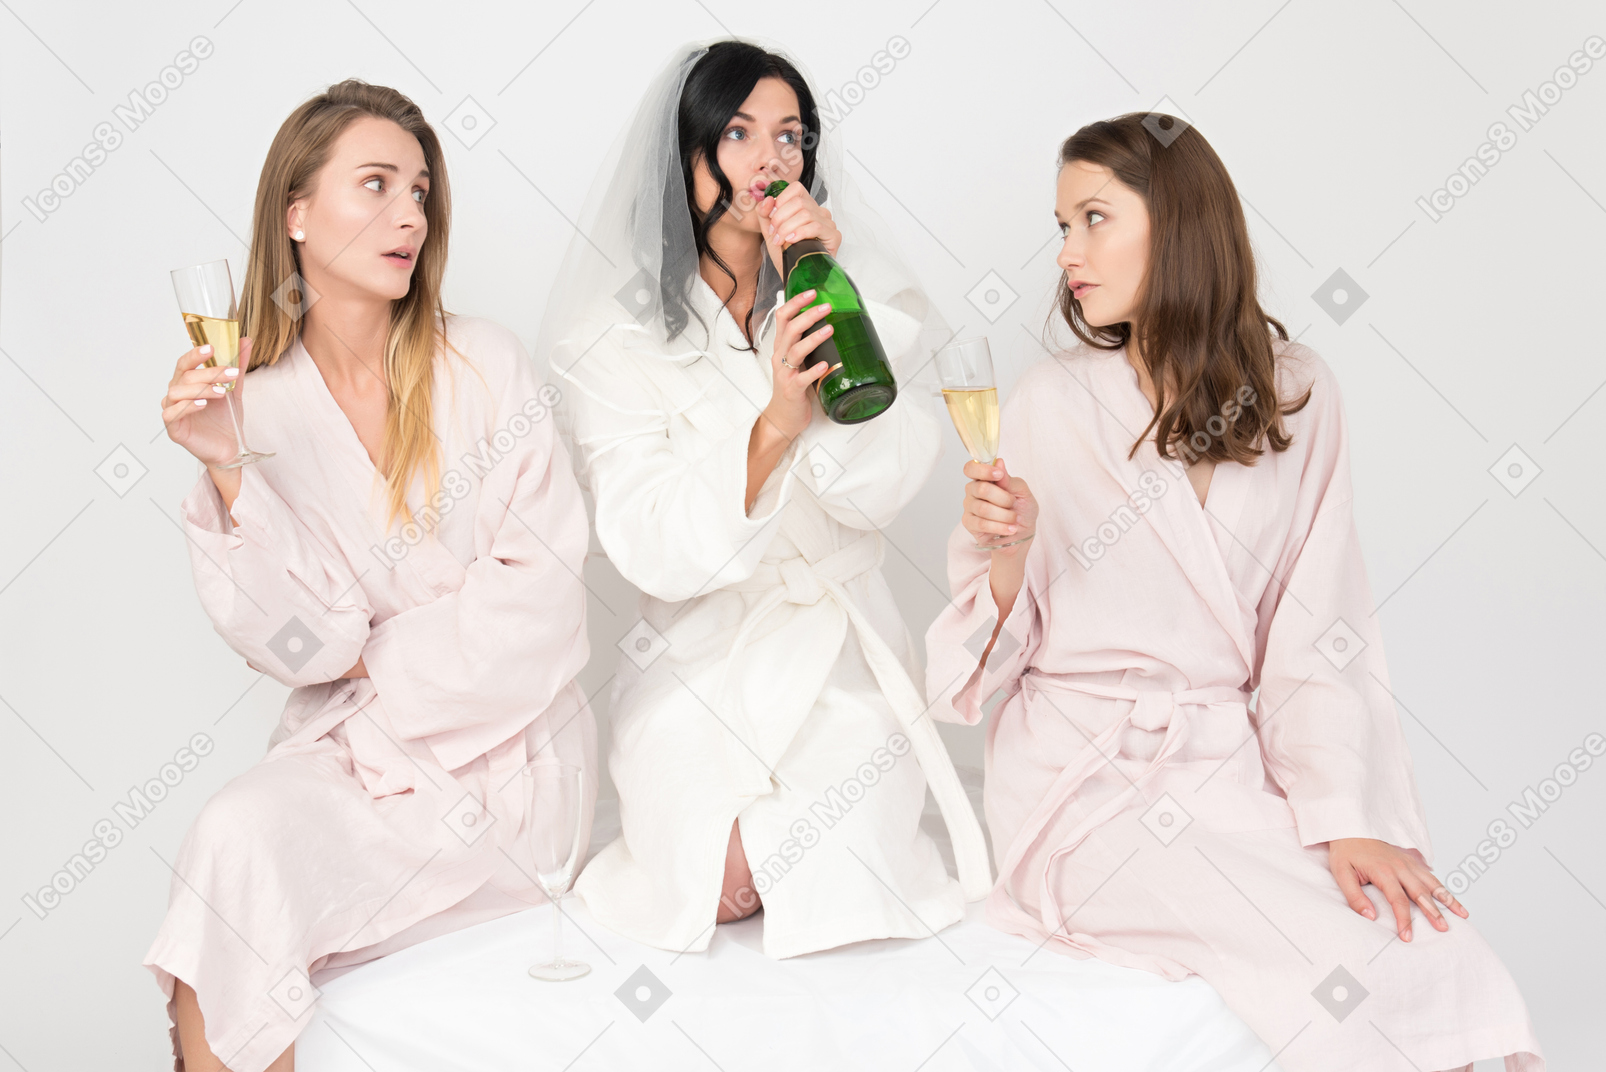 Подружка невесты пьет шампанское, а невеста пьет прямо из бутылки